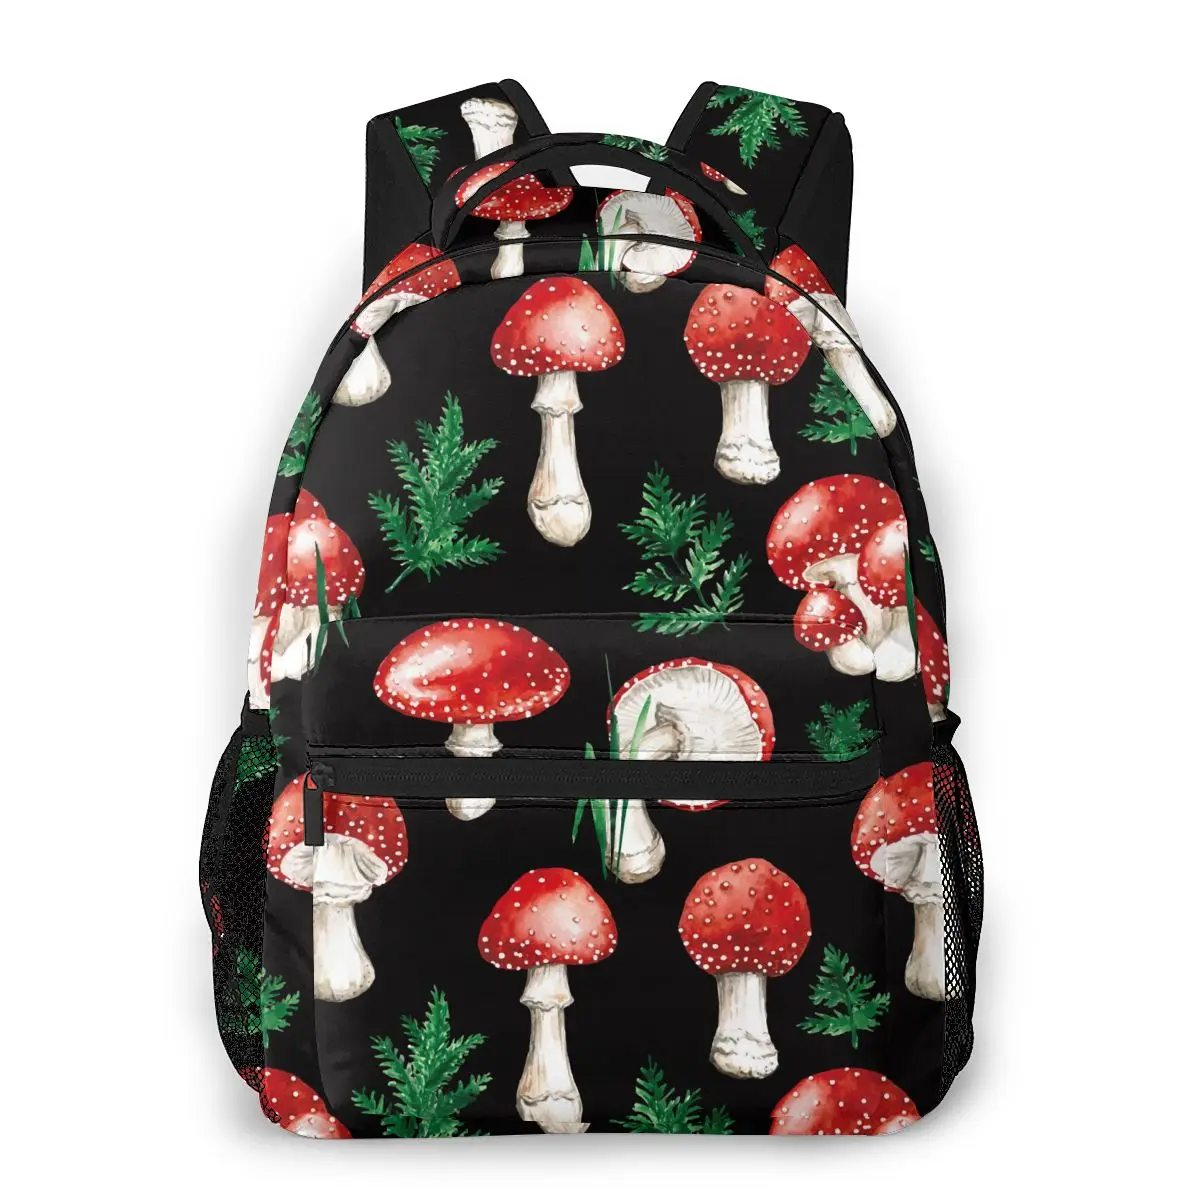 Red Mushrooms Backpack Unisex Bag Fashion Backpack For Travel Teenager Girl Shoulder Bag Mochilas